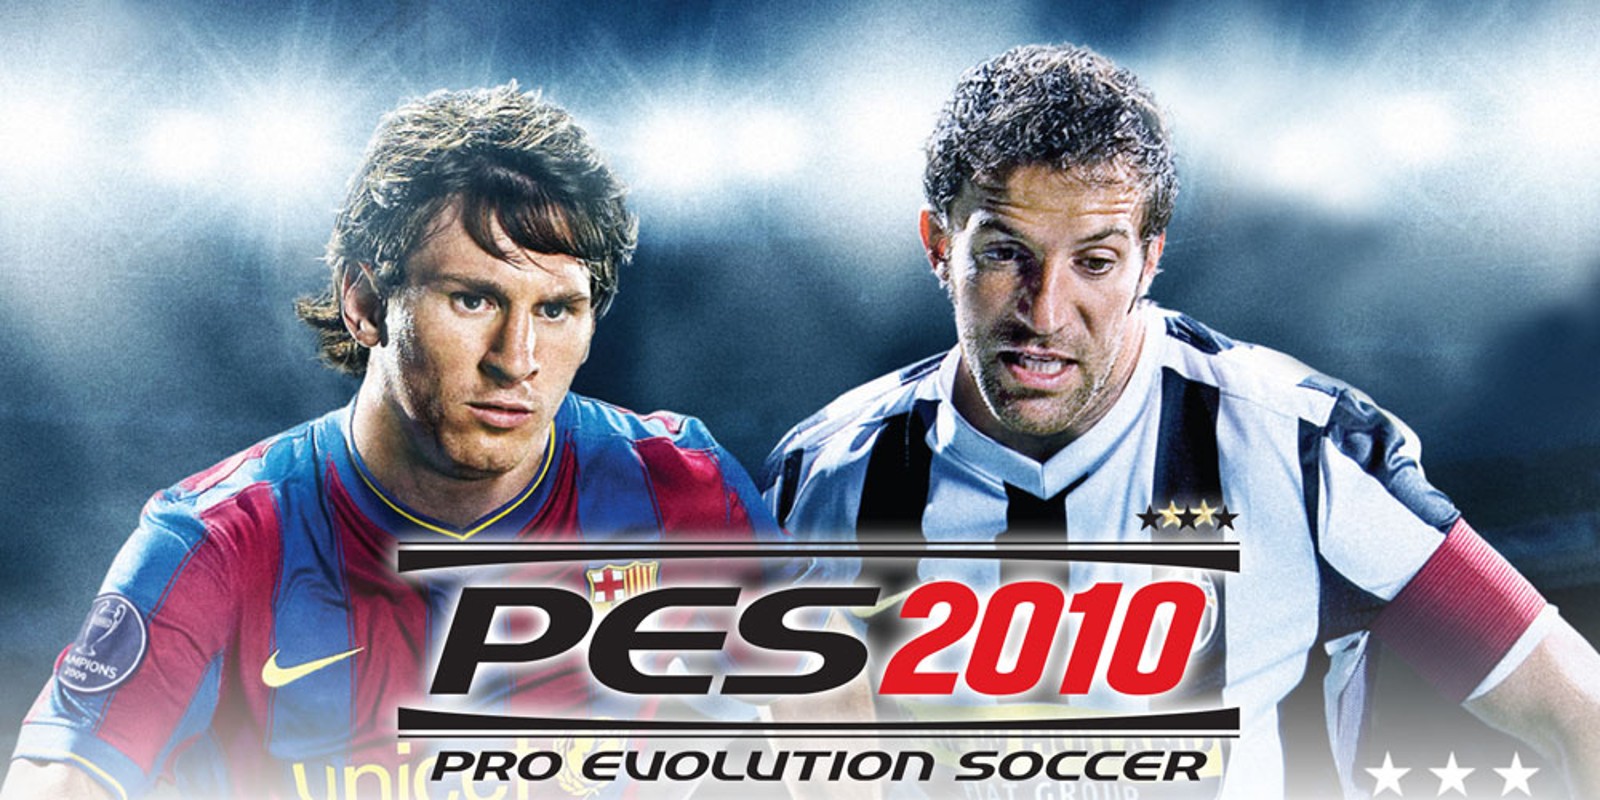 pro evolution soccer 2010 download